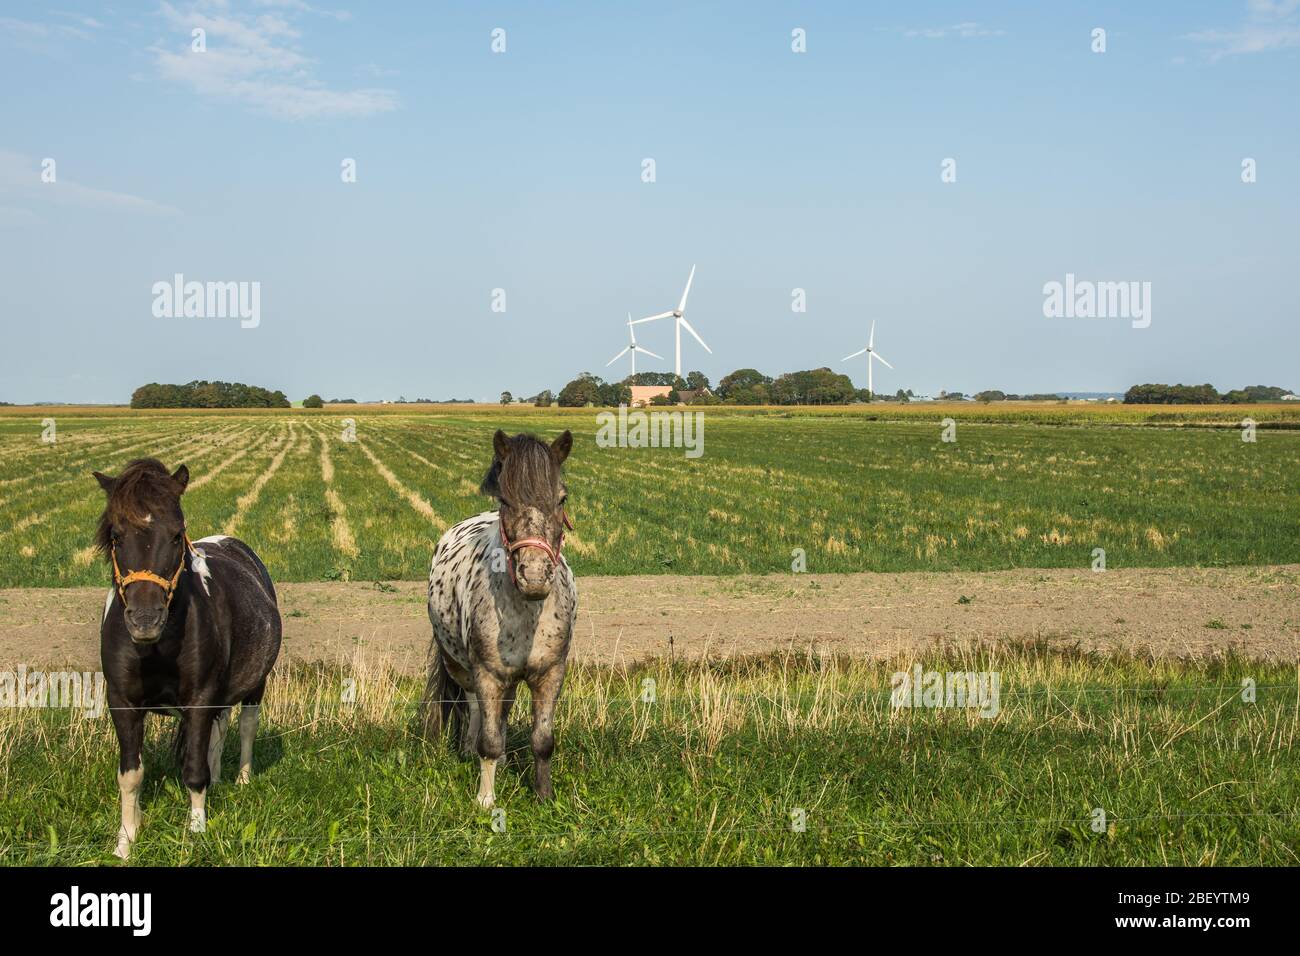 Deux chevaux en paysage rural dans la péninsule de Nordstrand, en Frise du Nord, en Allemagne Banque D'Images